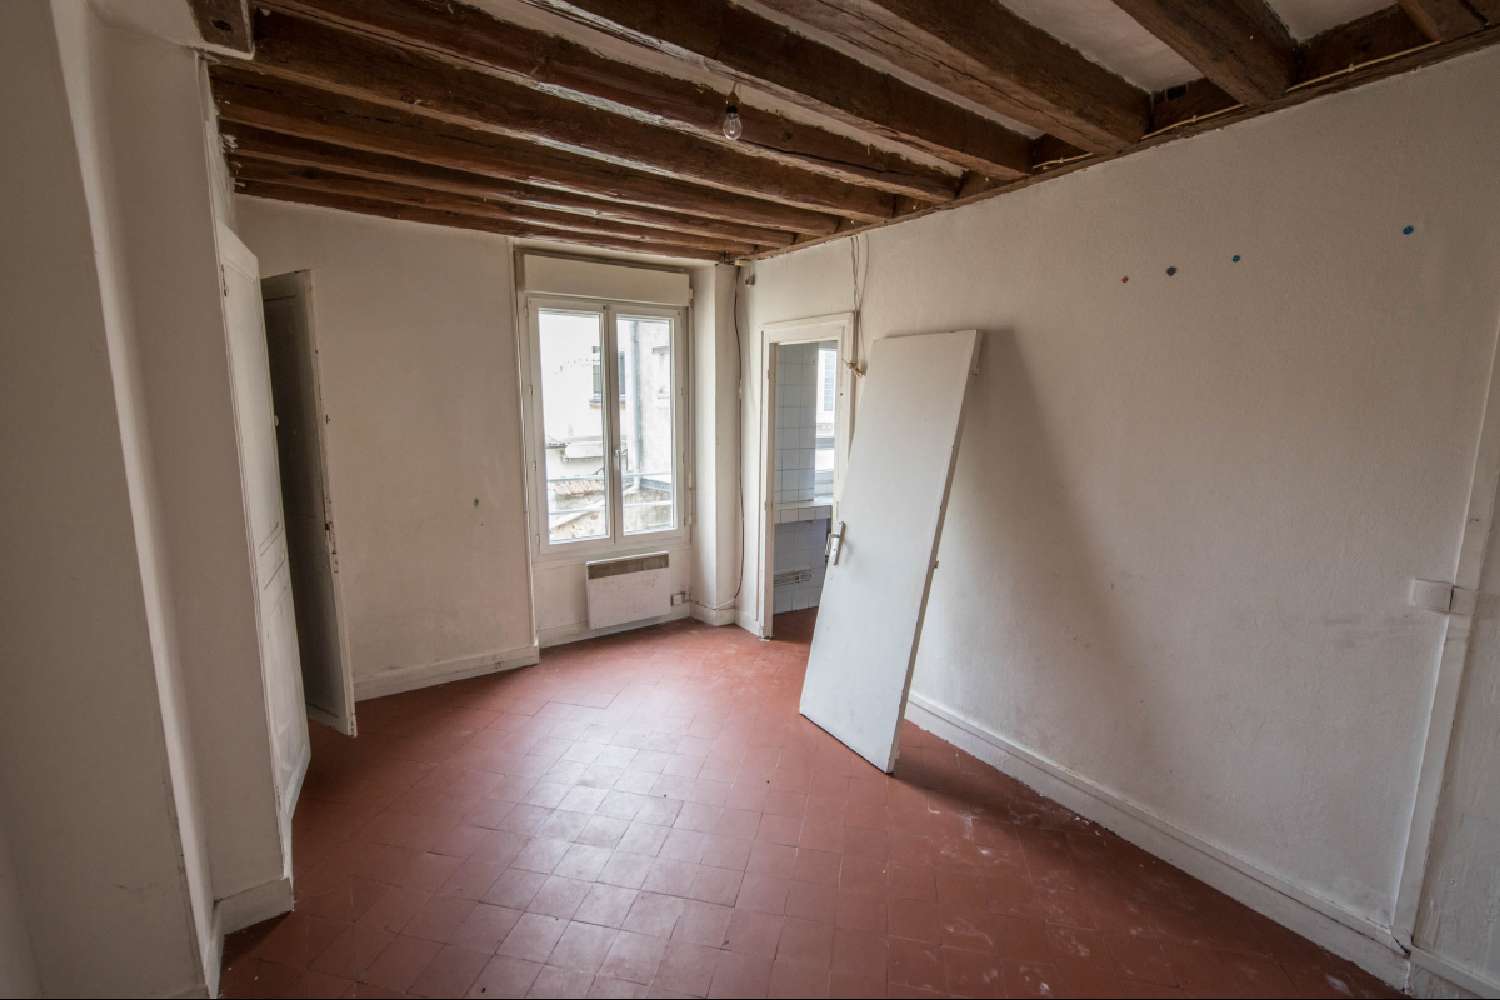  for sale apartment Nemours Seine-et-Marne 3